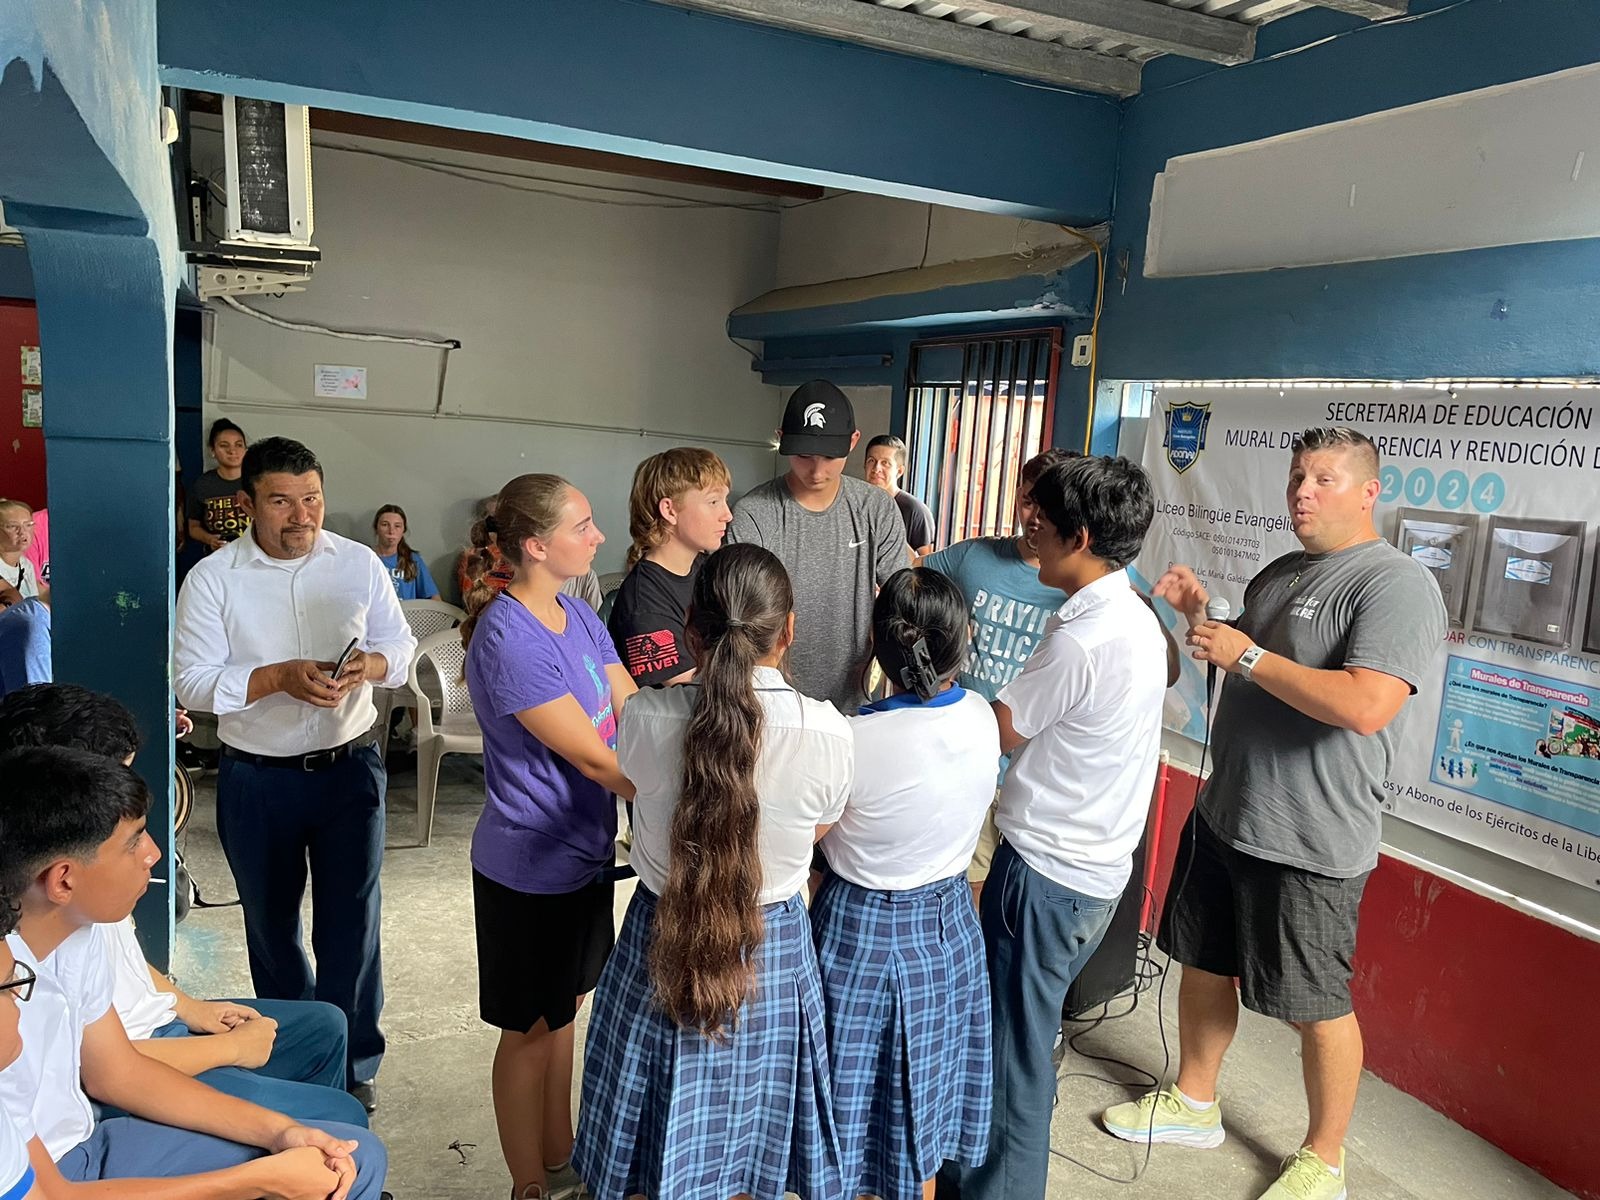 Sharing the Gospel at a School 